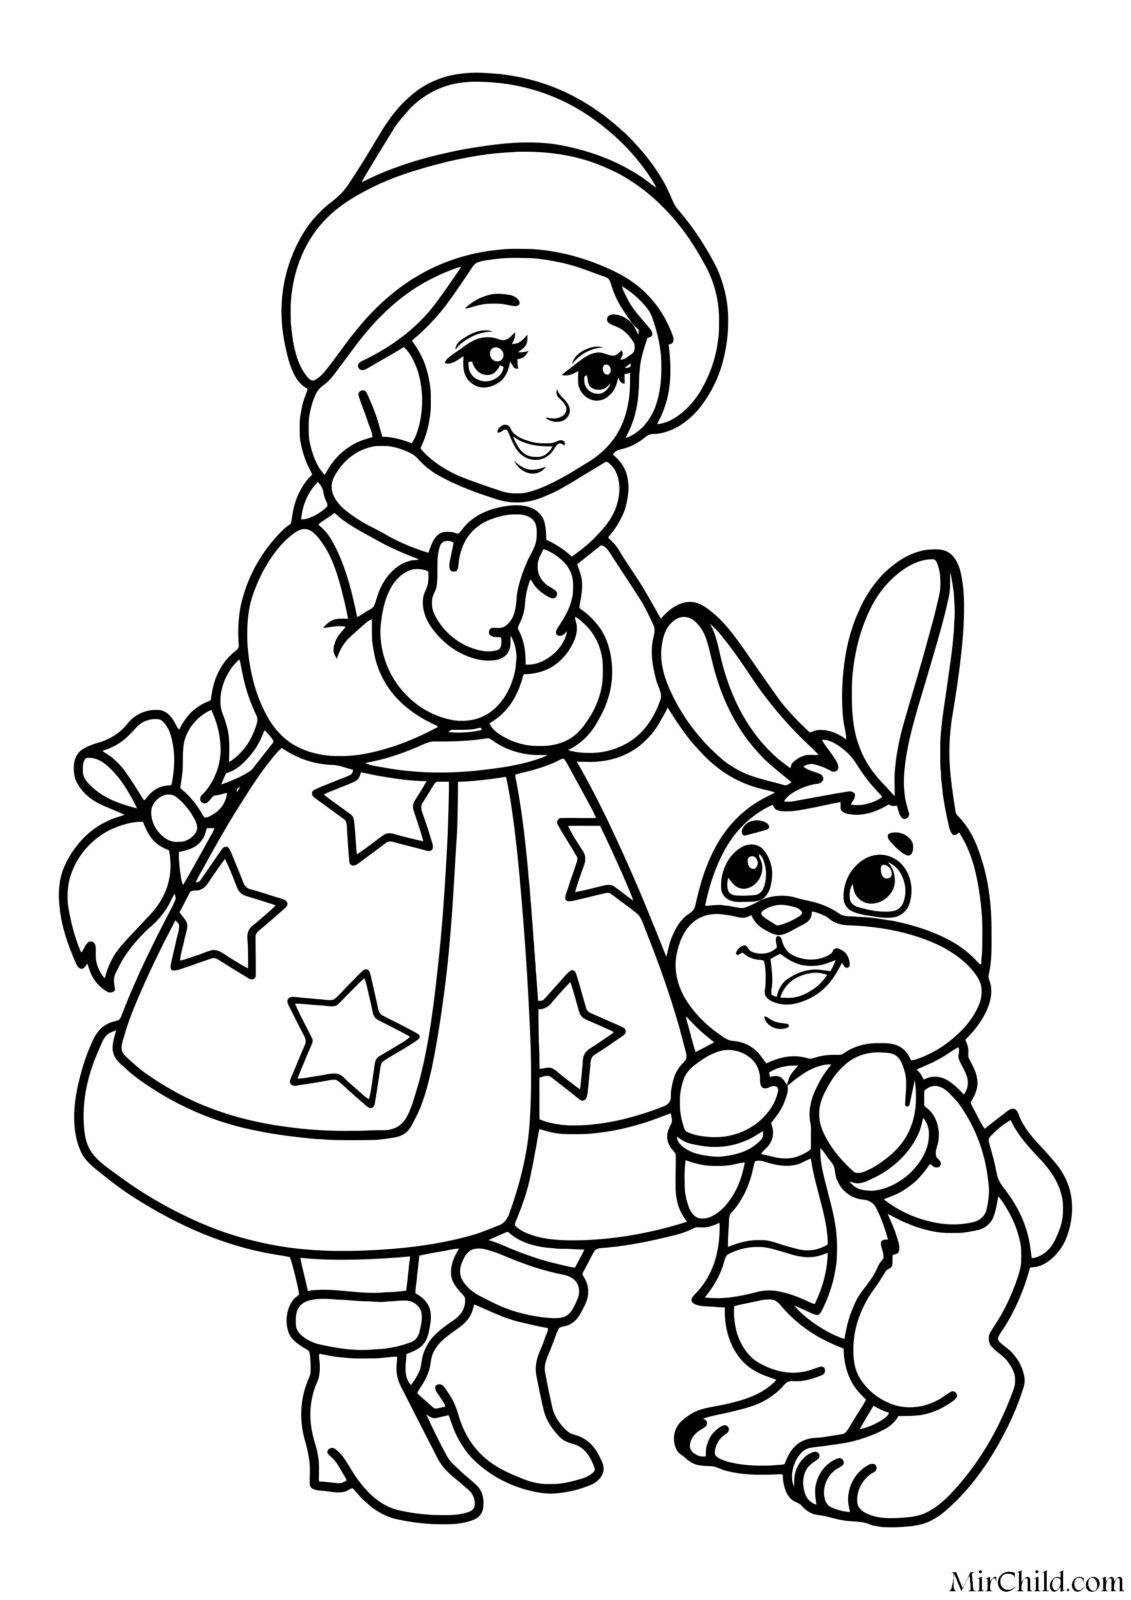 раскраска новогодний кролик для детей 10